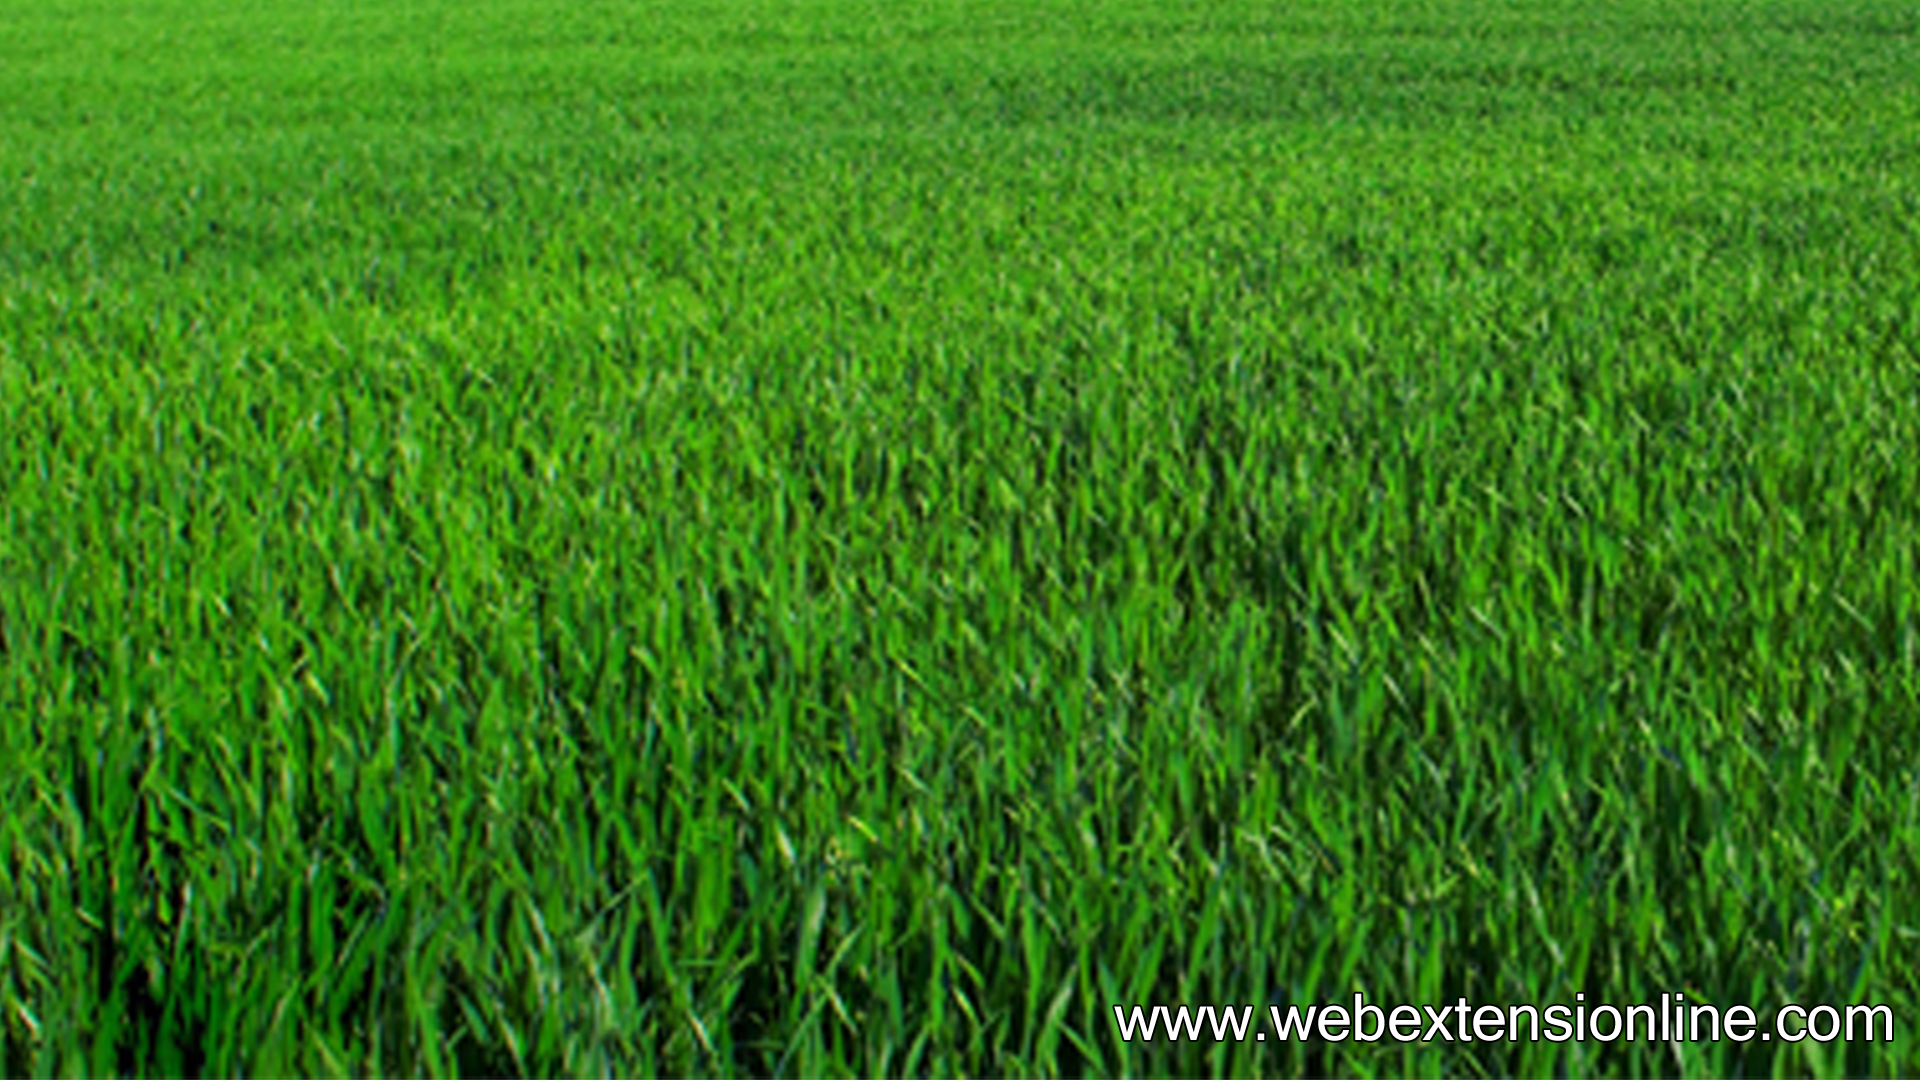 Free HD Natural Green Grass wallpaper webextensionline 1920x1080